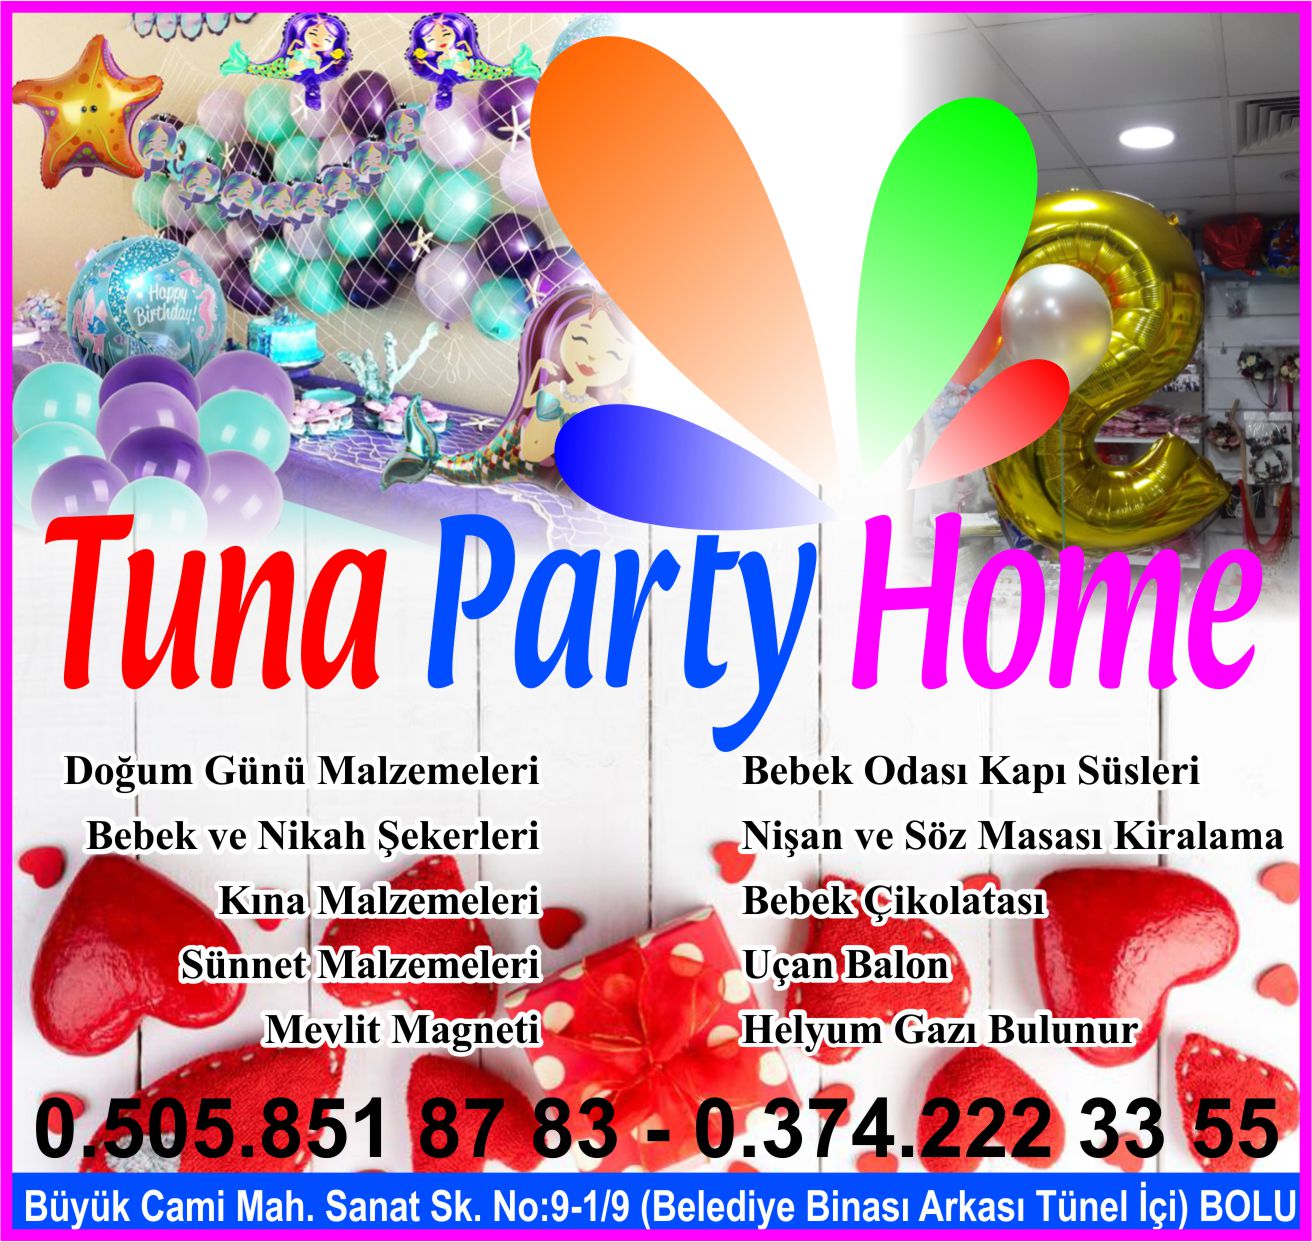 tuna-party-home-bolu